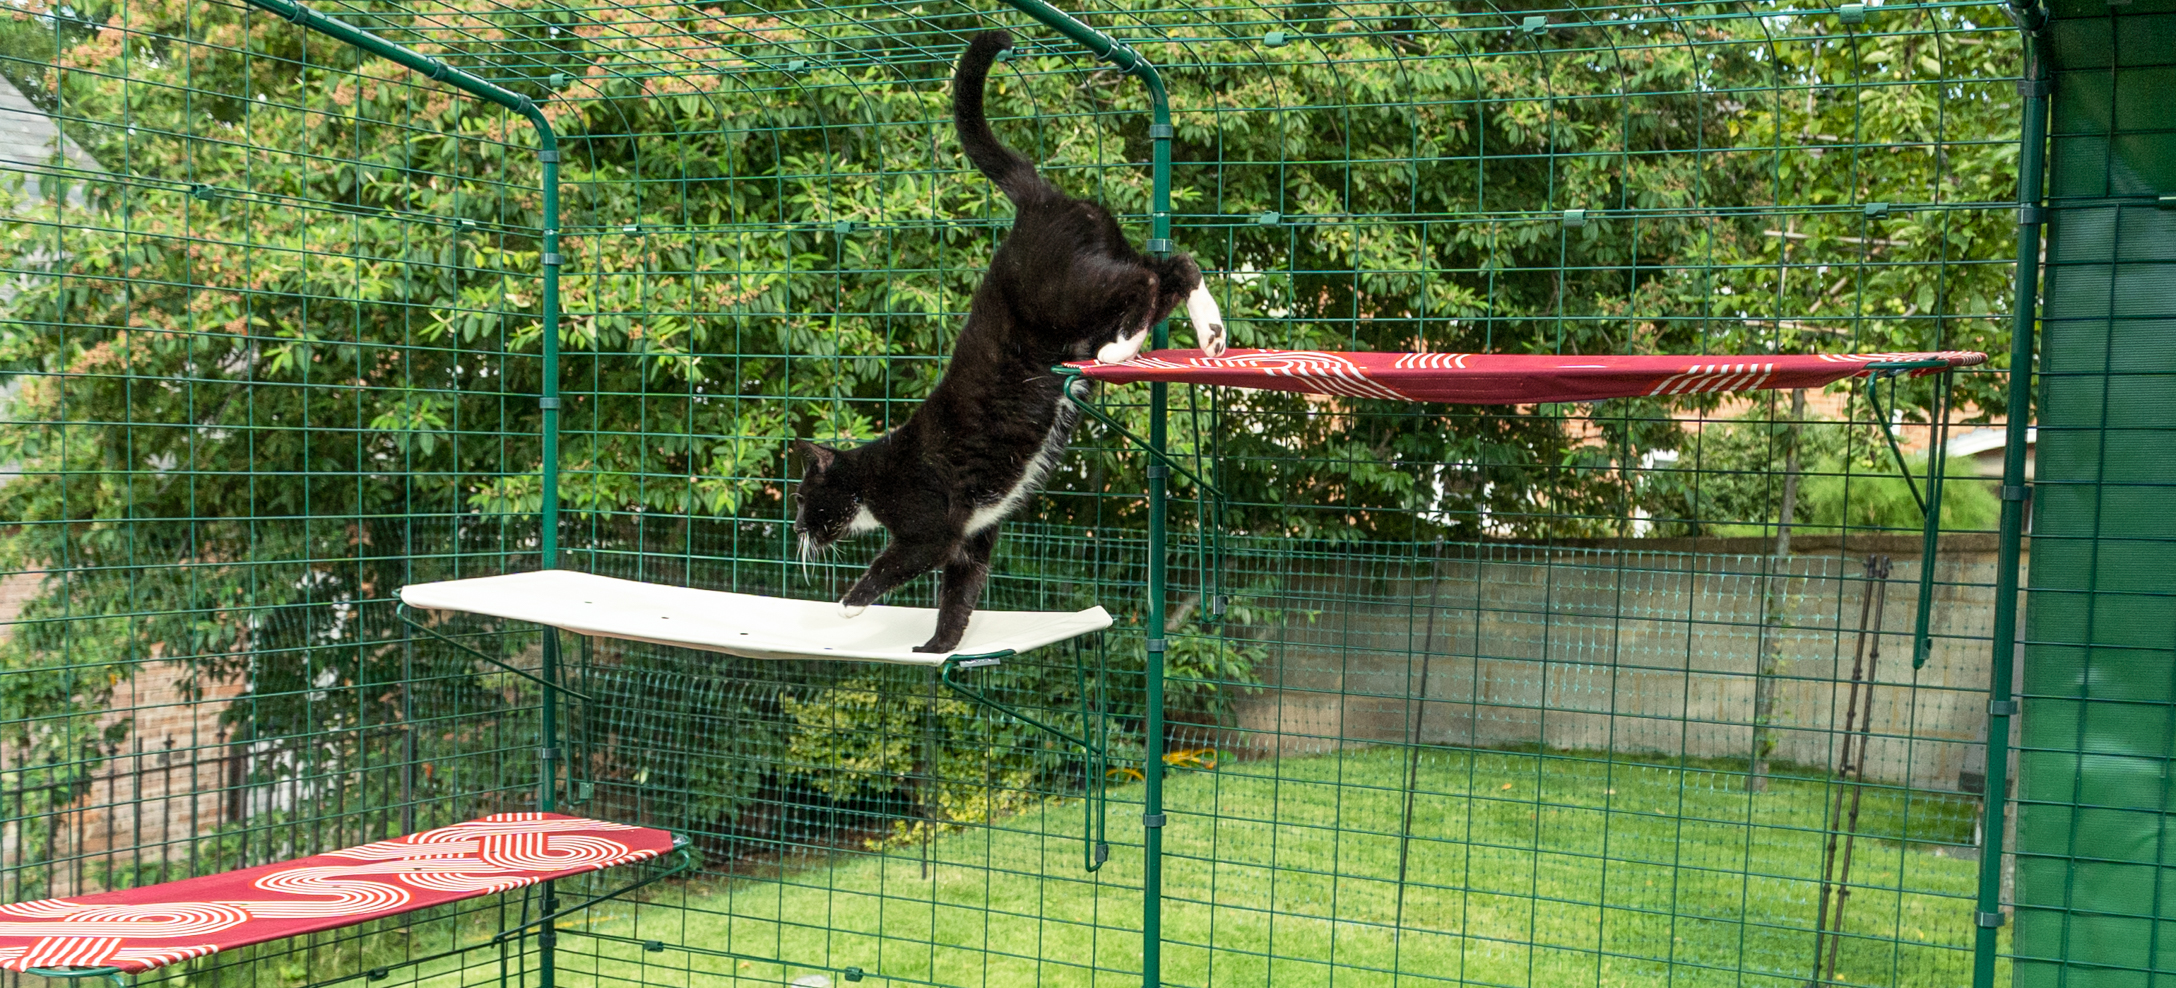 Kat klimt op Omlet stoffen Outdoor kattenplank in een kattenren voor buiten in de tuin